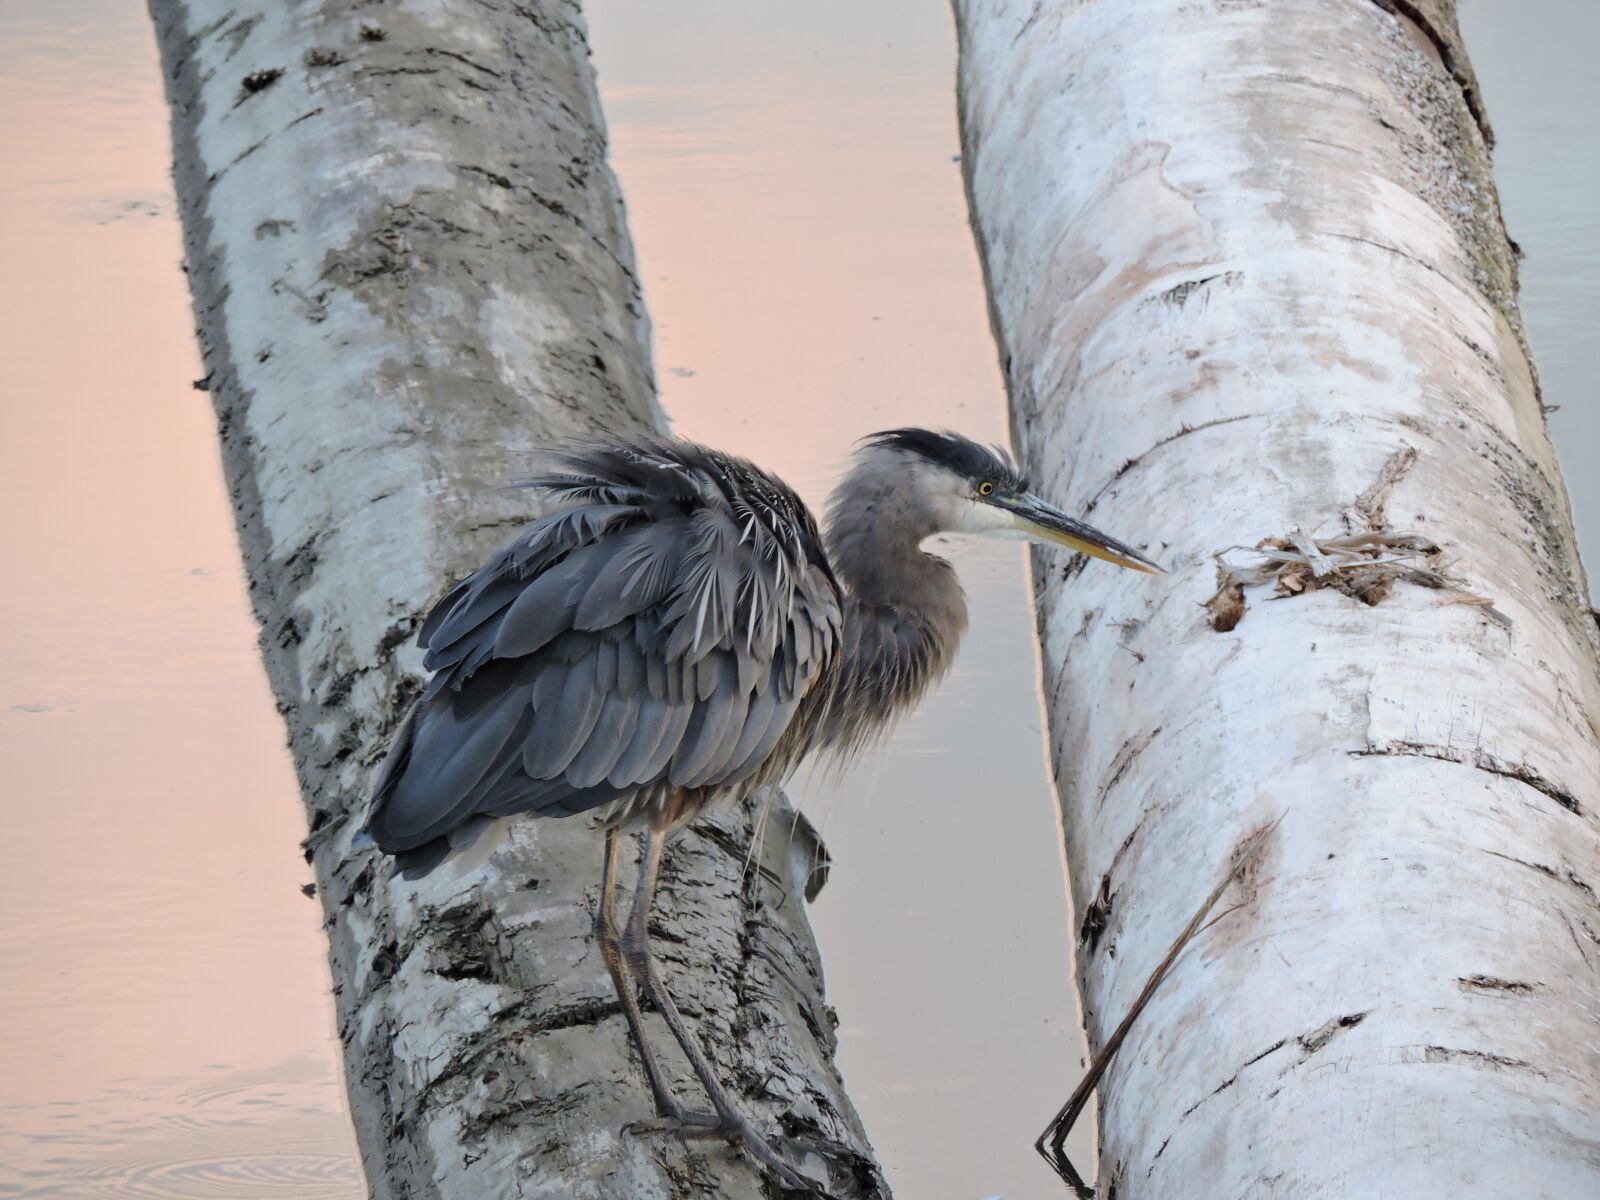 Nikon Coolpix P530 sample photo. Nature, blue heron, birds photography